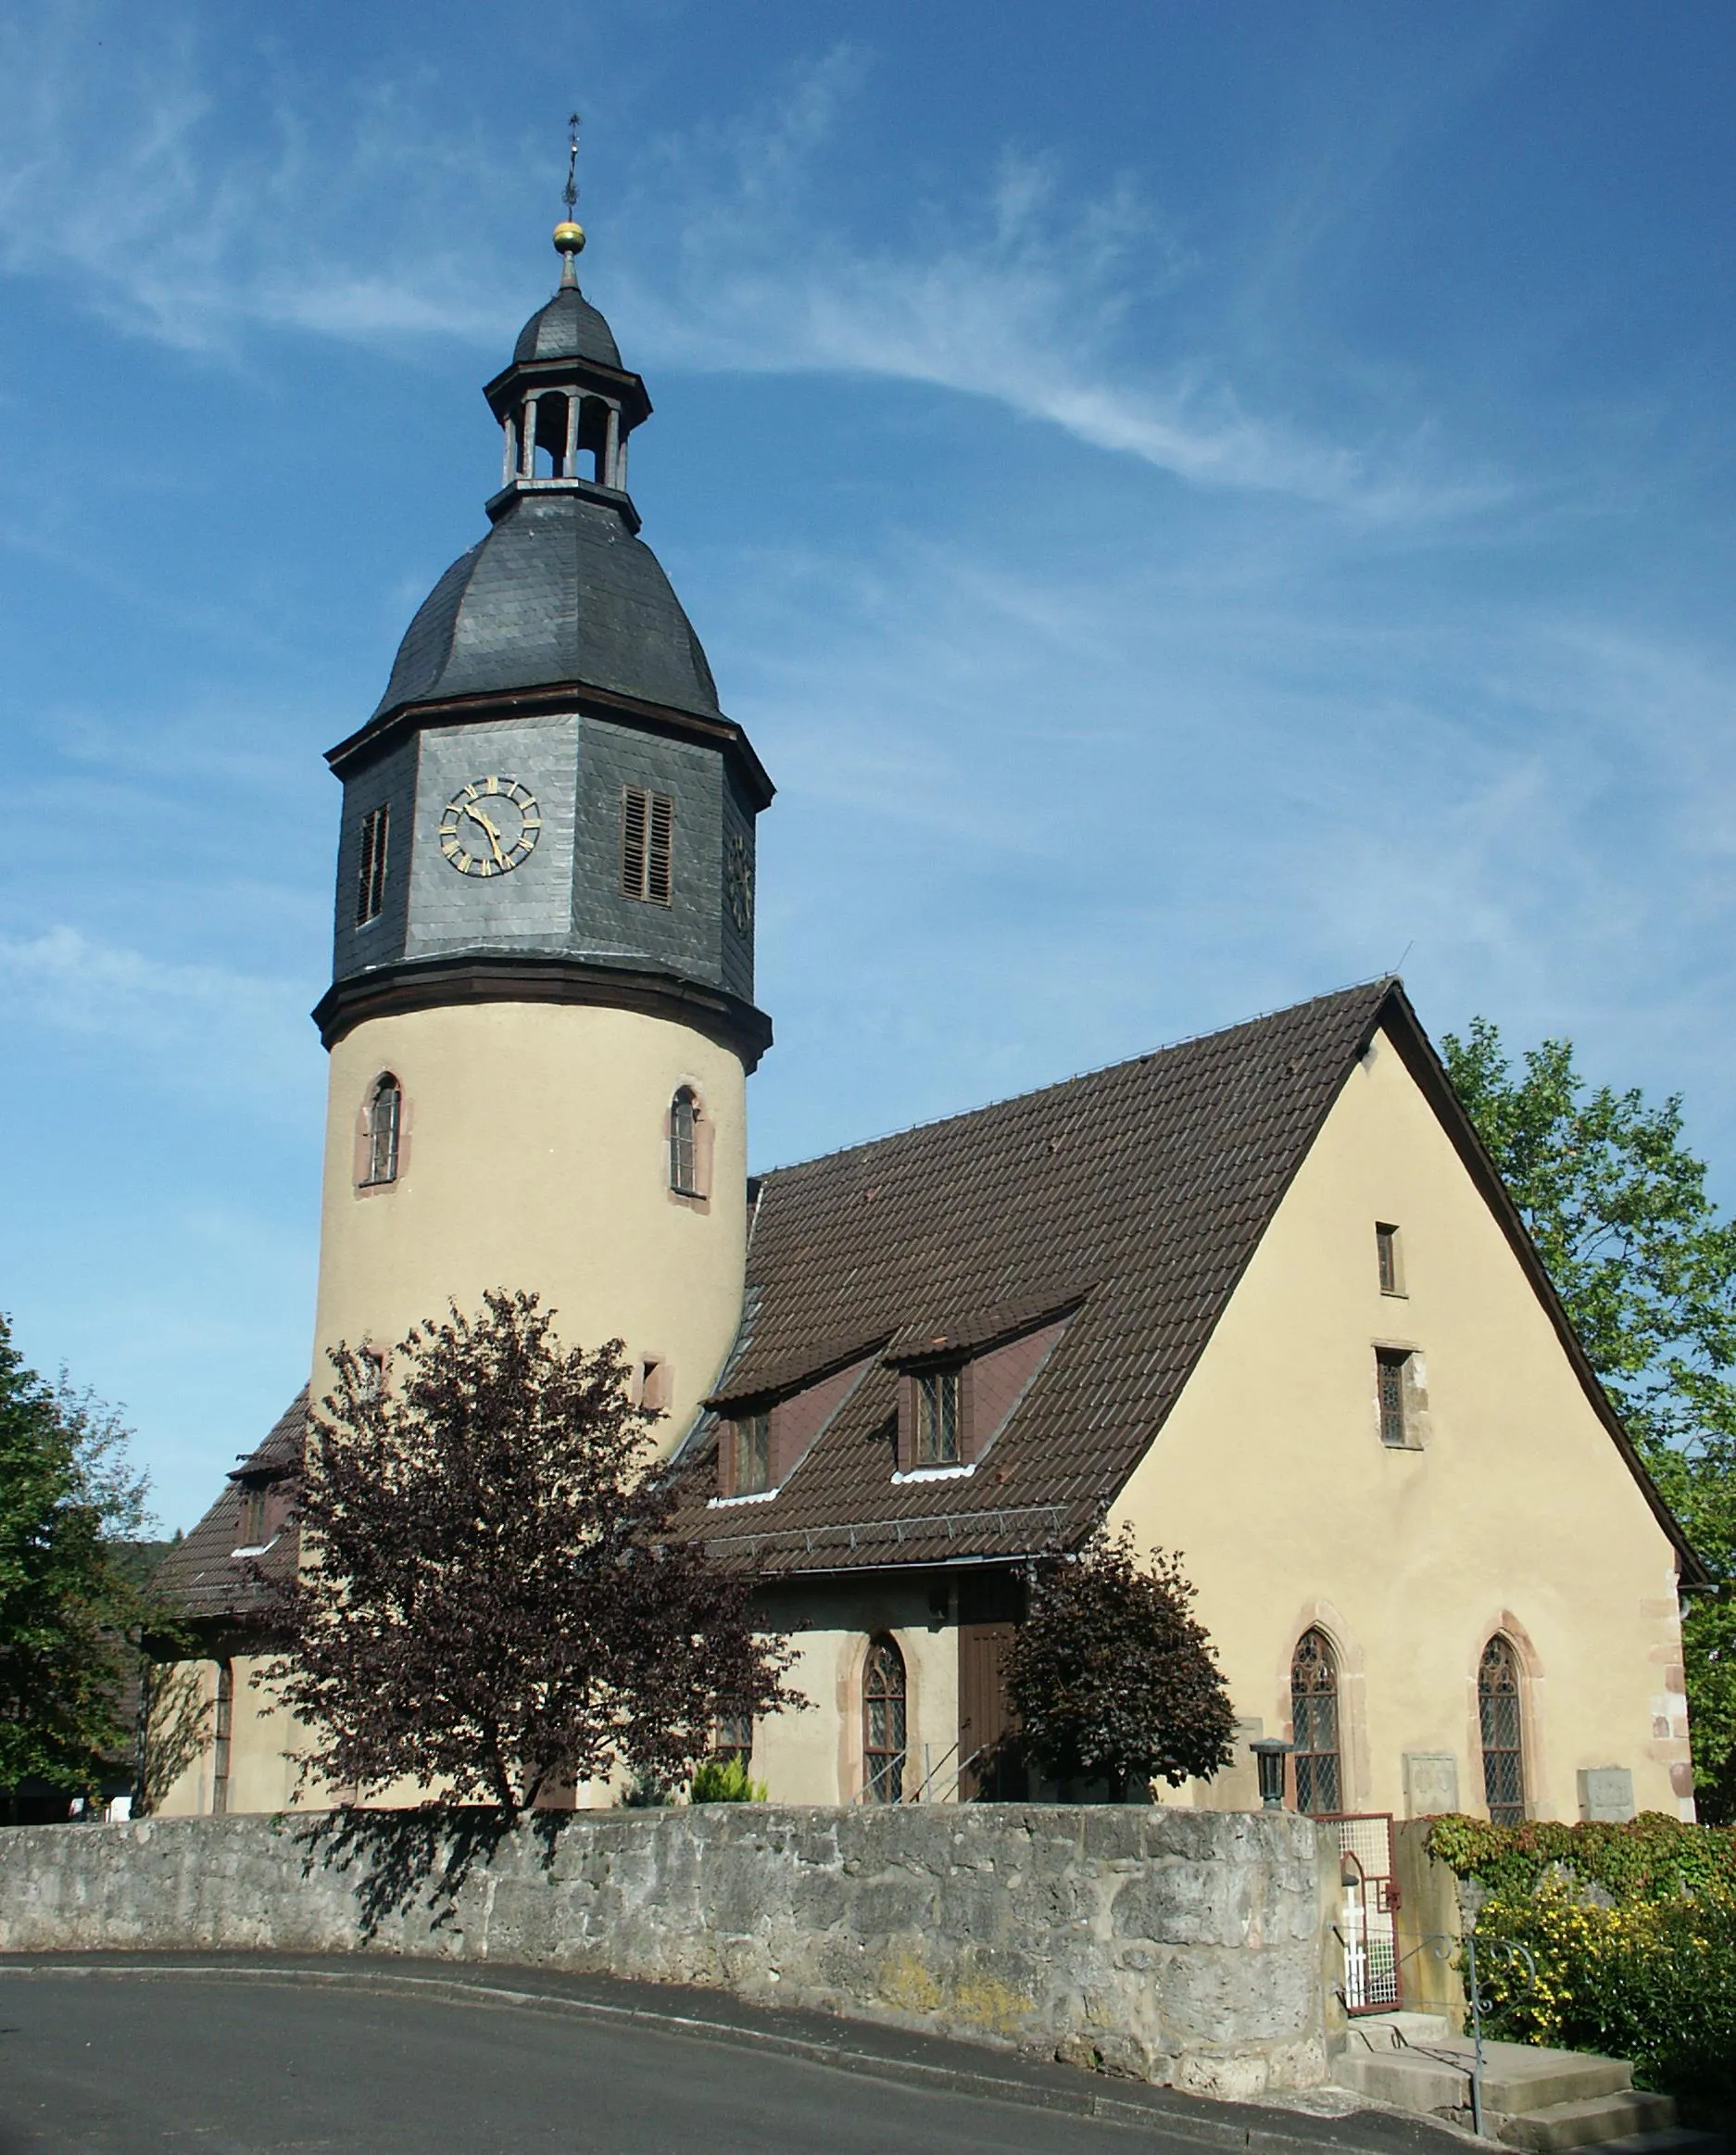 Photo showing: Kirche in Nentershausen, der Kirchturm wird um das Jahr 1200 datiert und wurde ursprünglich wohl als Wehrturm verwendet.